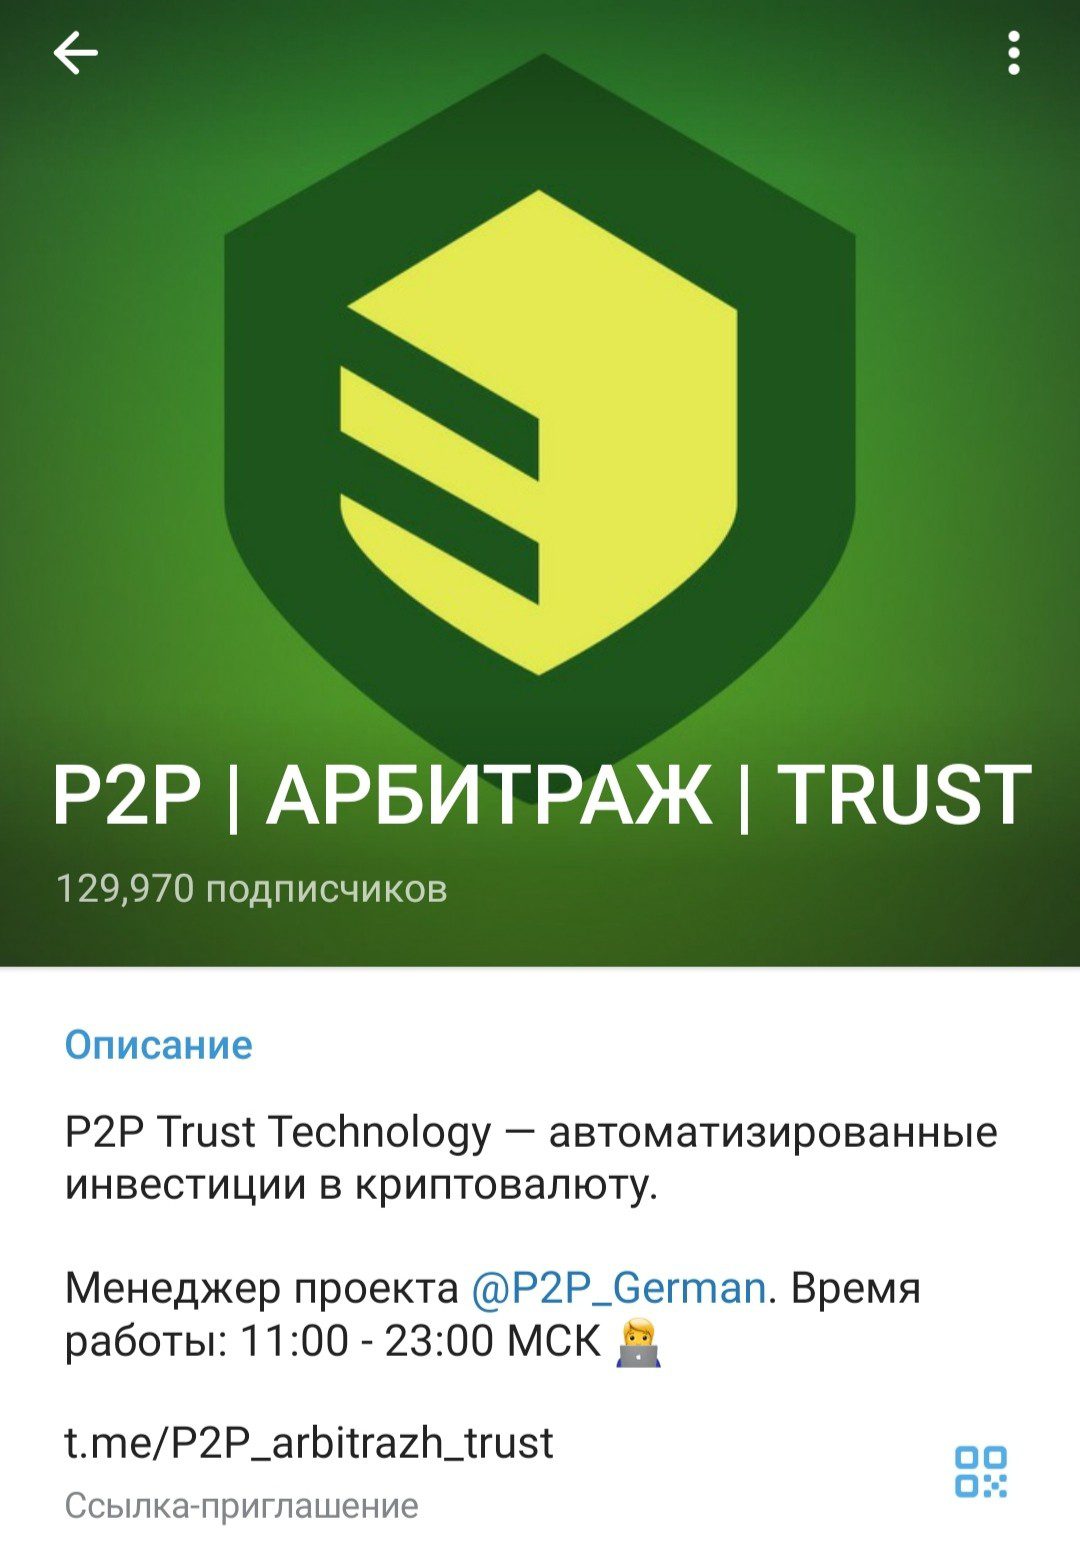 P2P Trust Technology телеграм